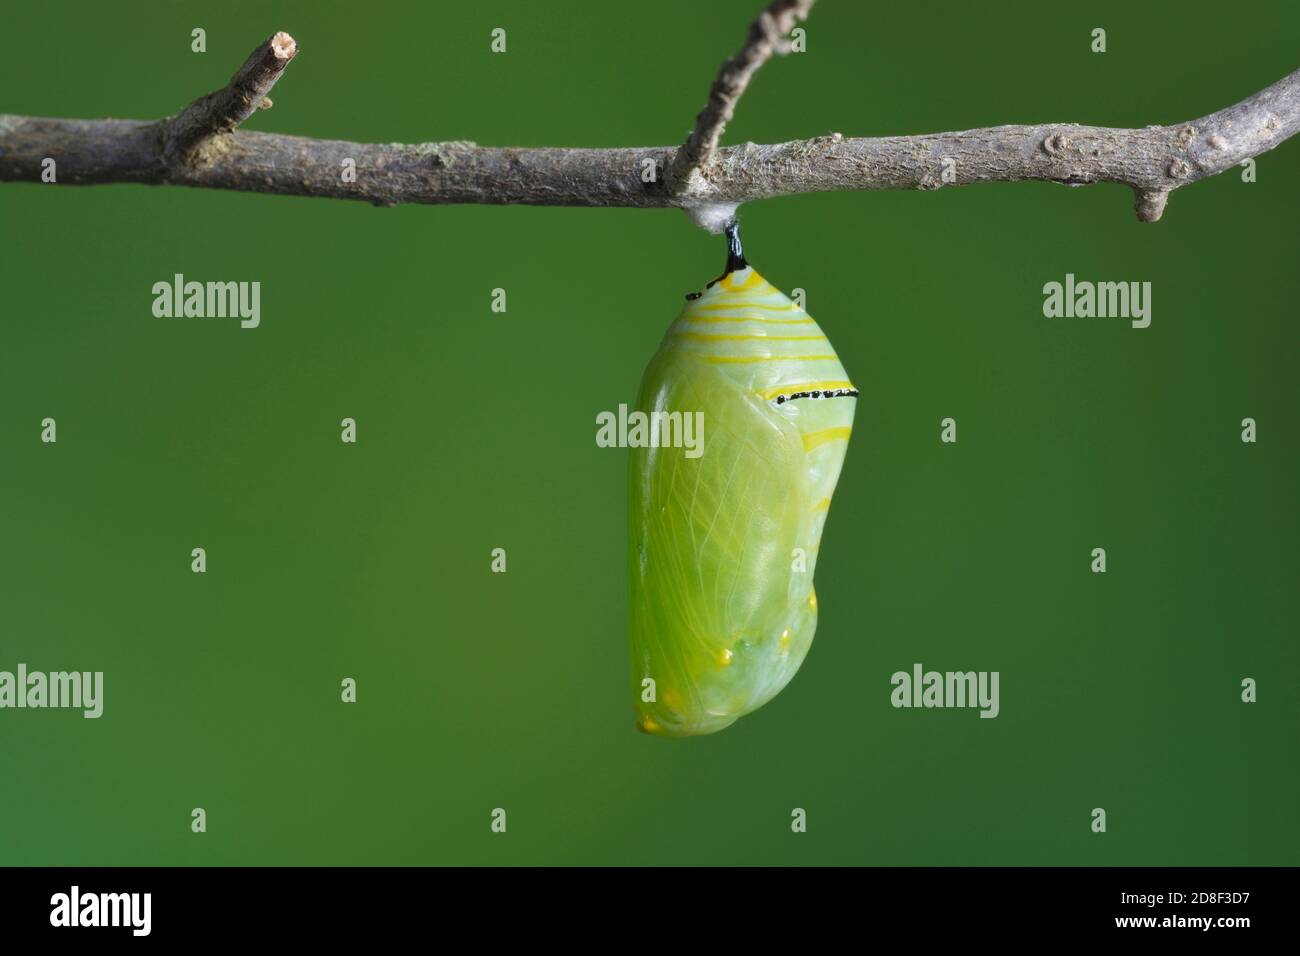 Monarch (Danaus plexippus), caterpillar Pupating, série, Hill Country, Central Texas, États-Unis Banque D'Images